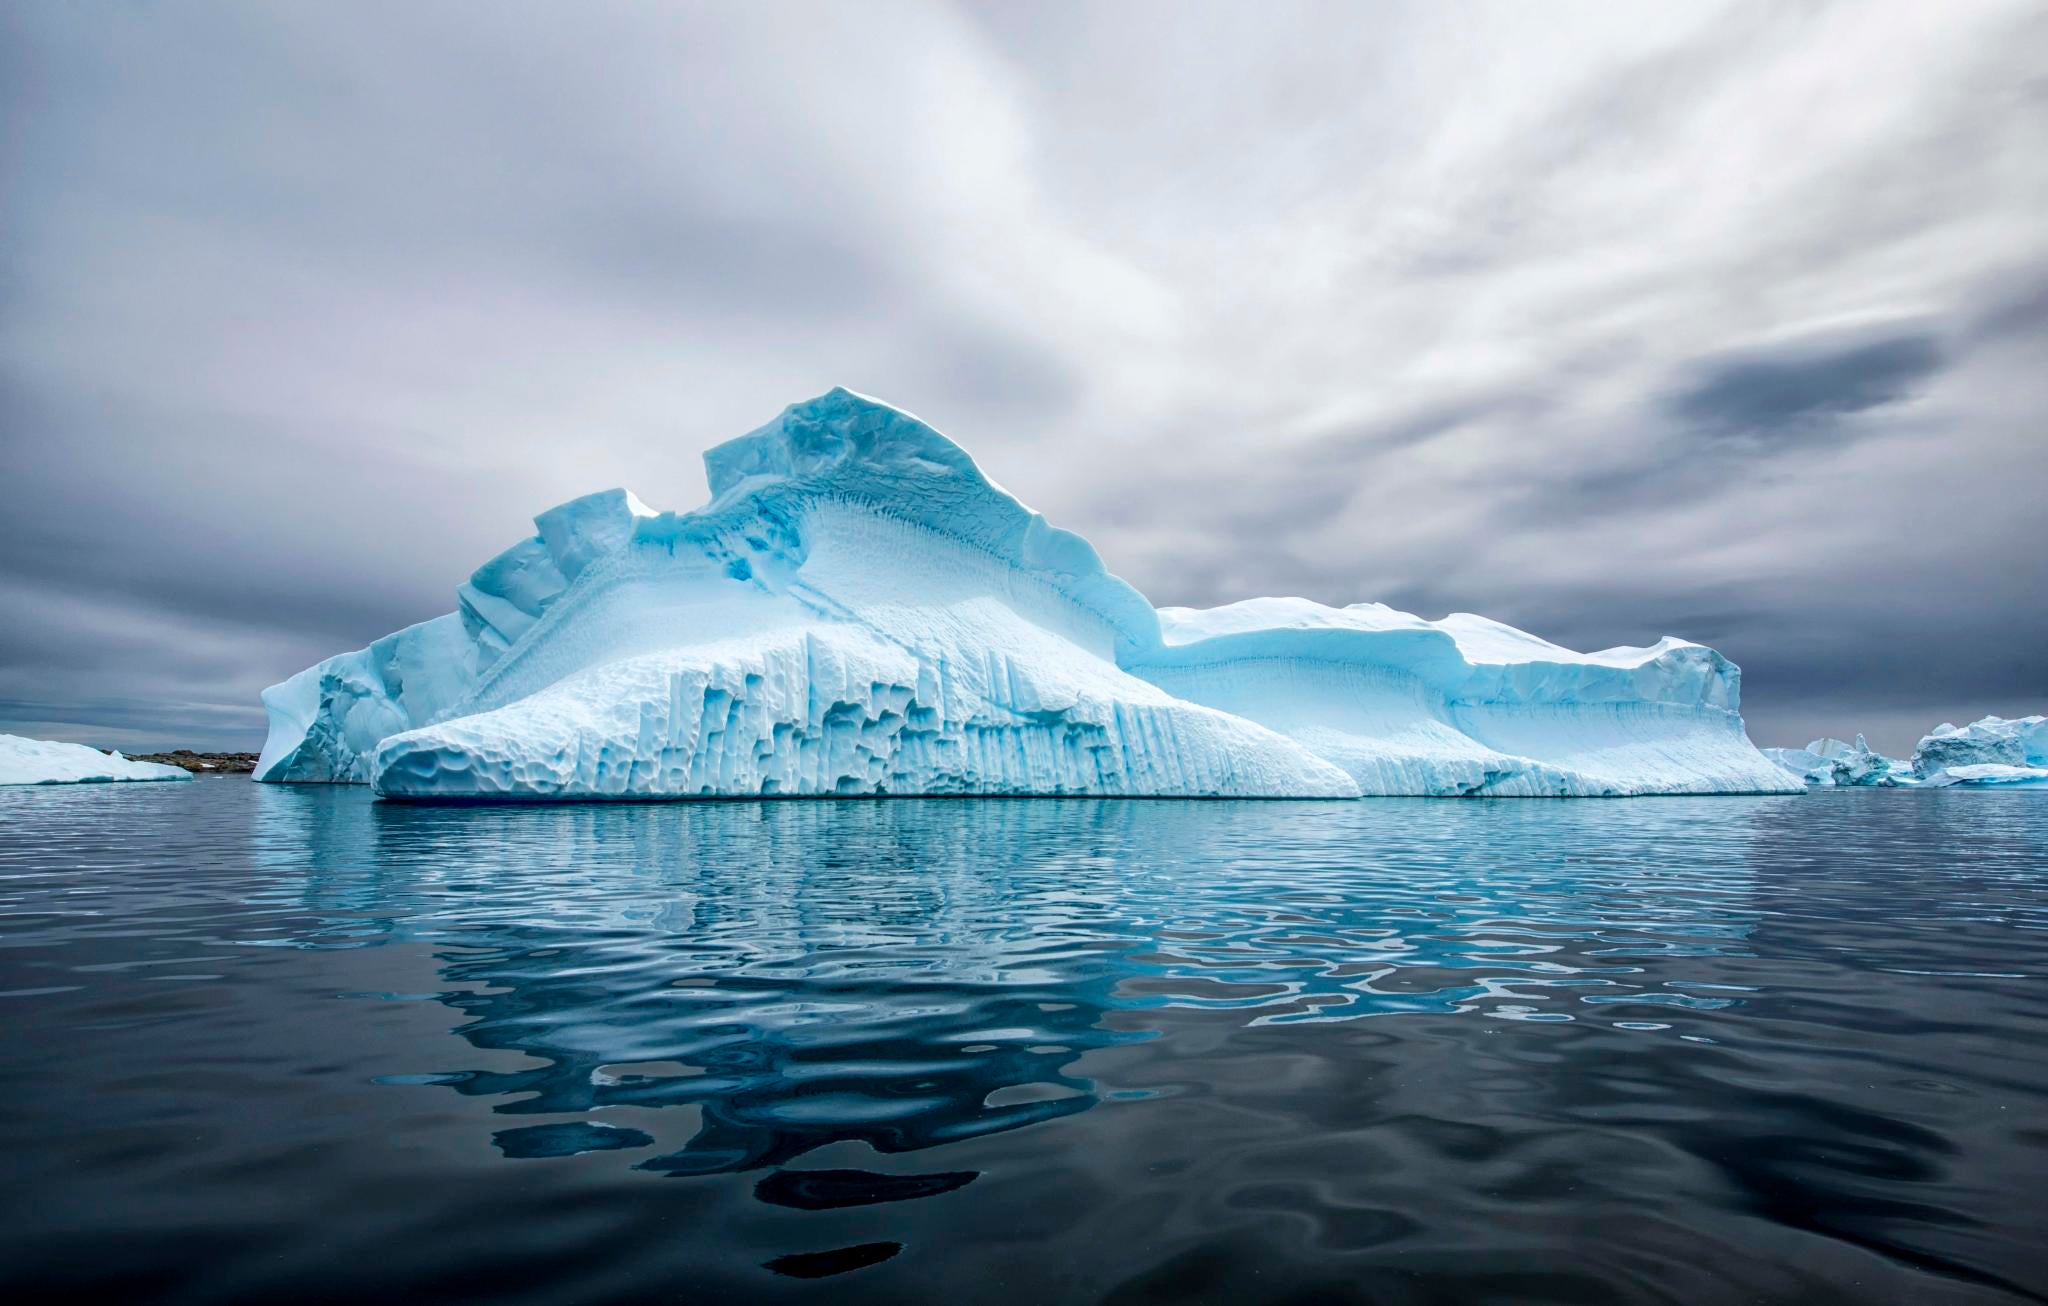 Бассейн антарктического океана. Арктика Северный Ледовитый океан. Северный Ледовитый океан и Антарктида. Северно Ледовитый океан Америка. Северно Ледовитый акеан.